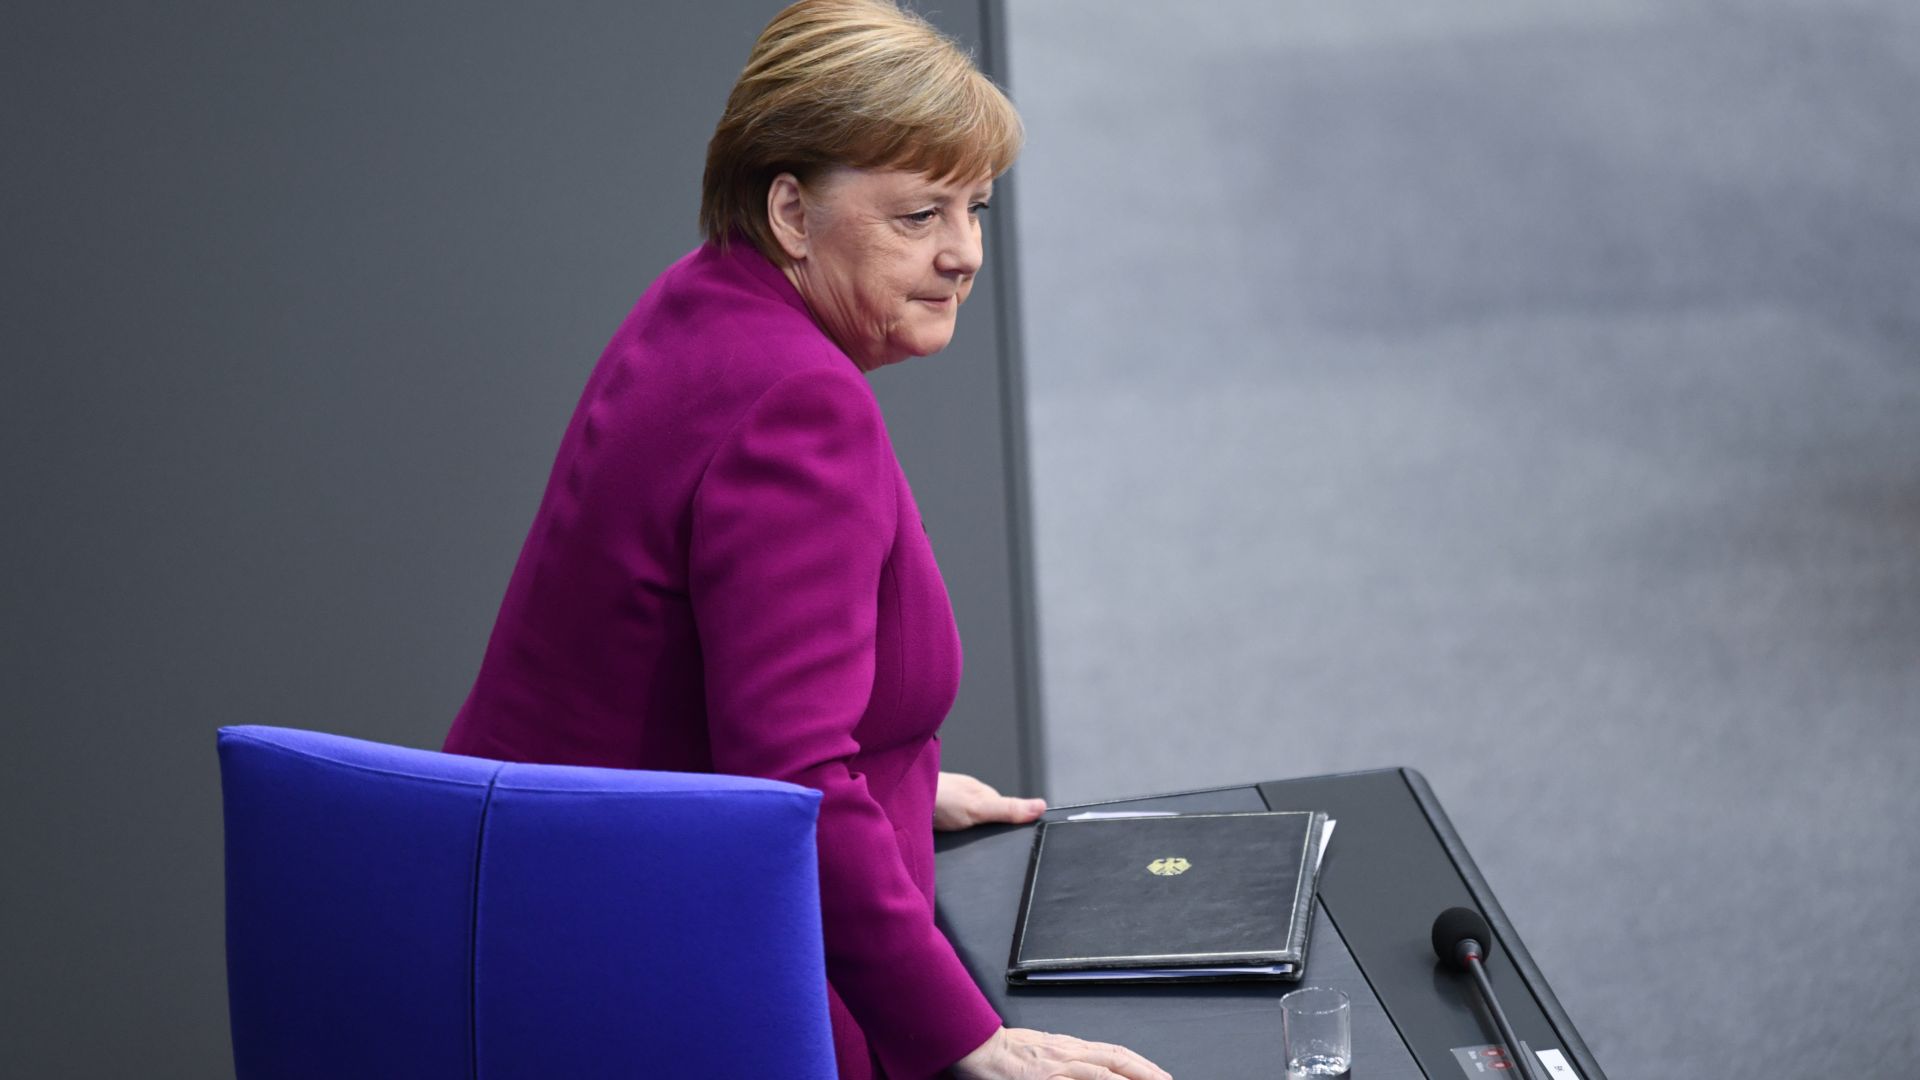 Alemania, dispuesta a aumentar "claramente" su aportación al presupuesto europeo